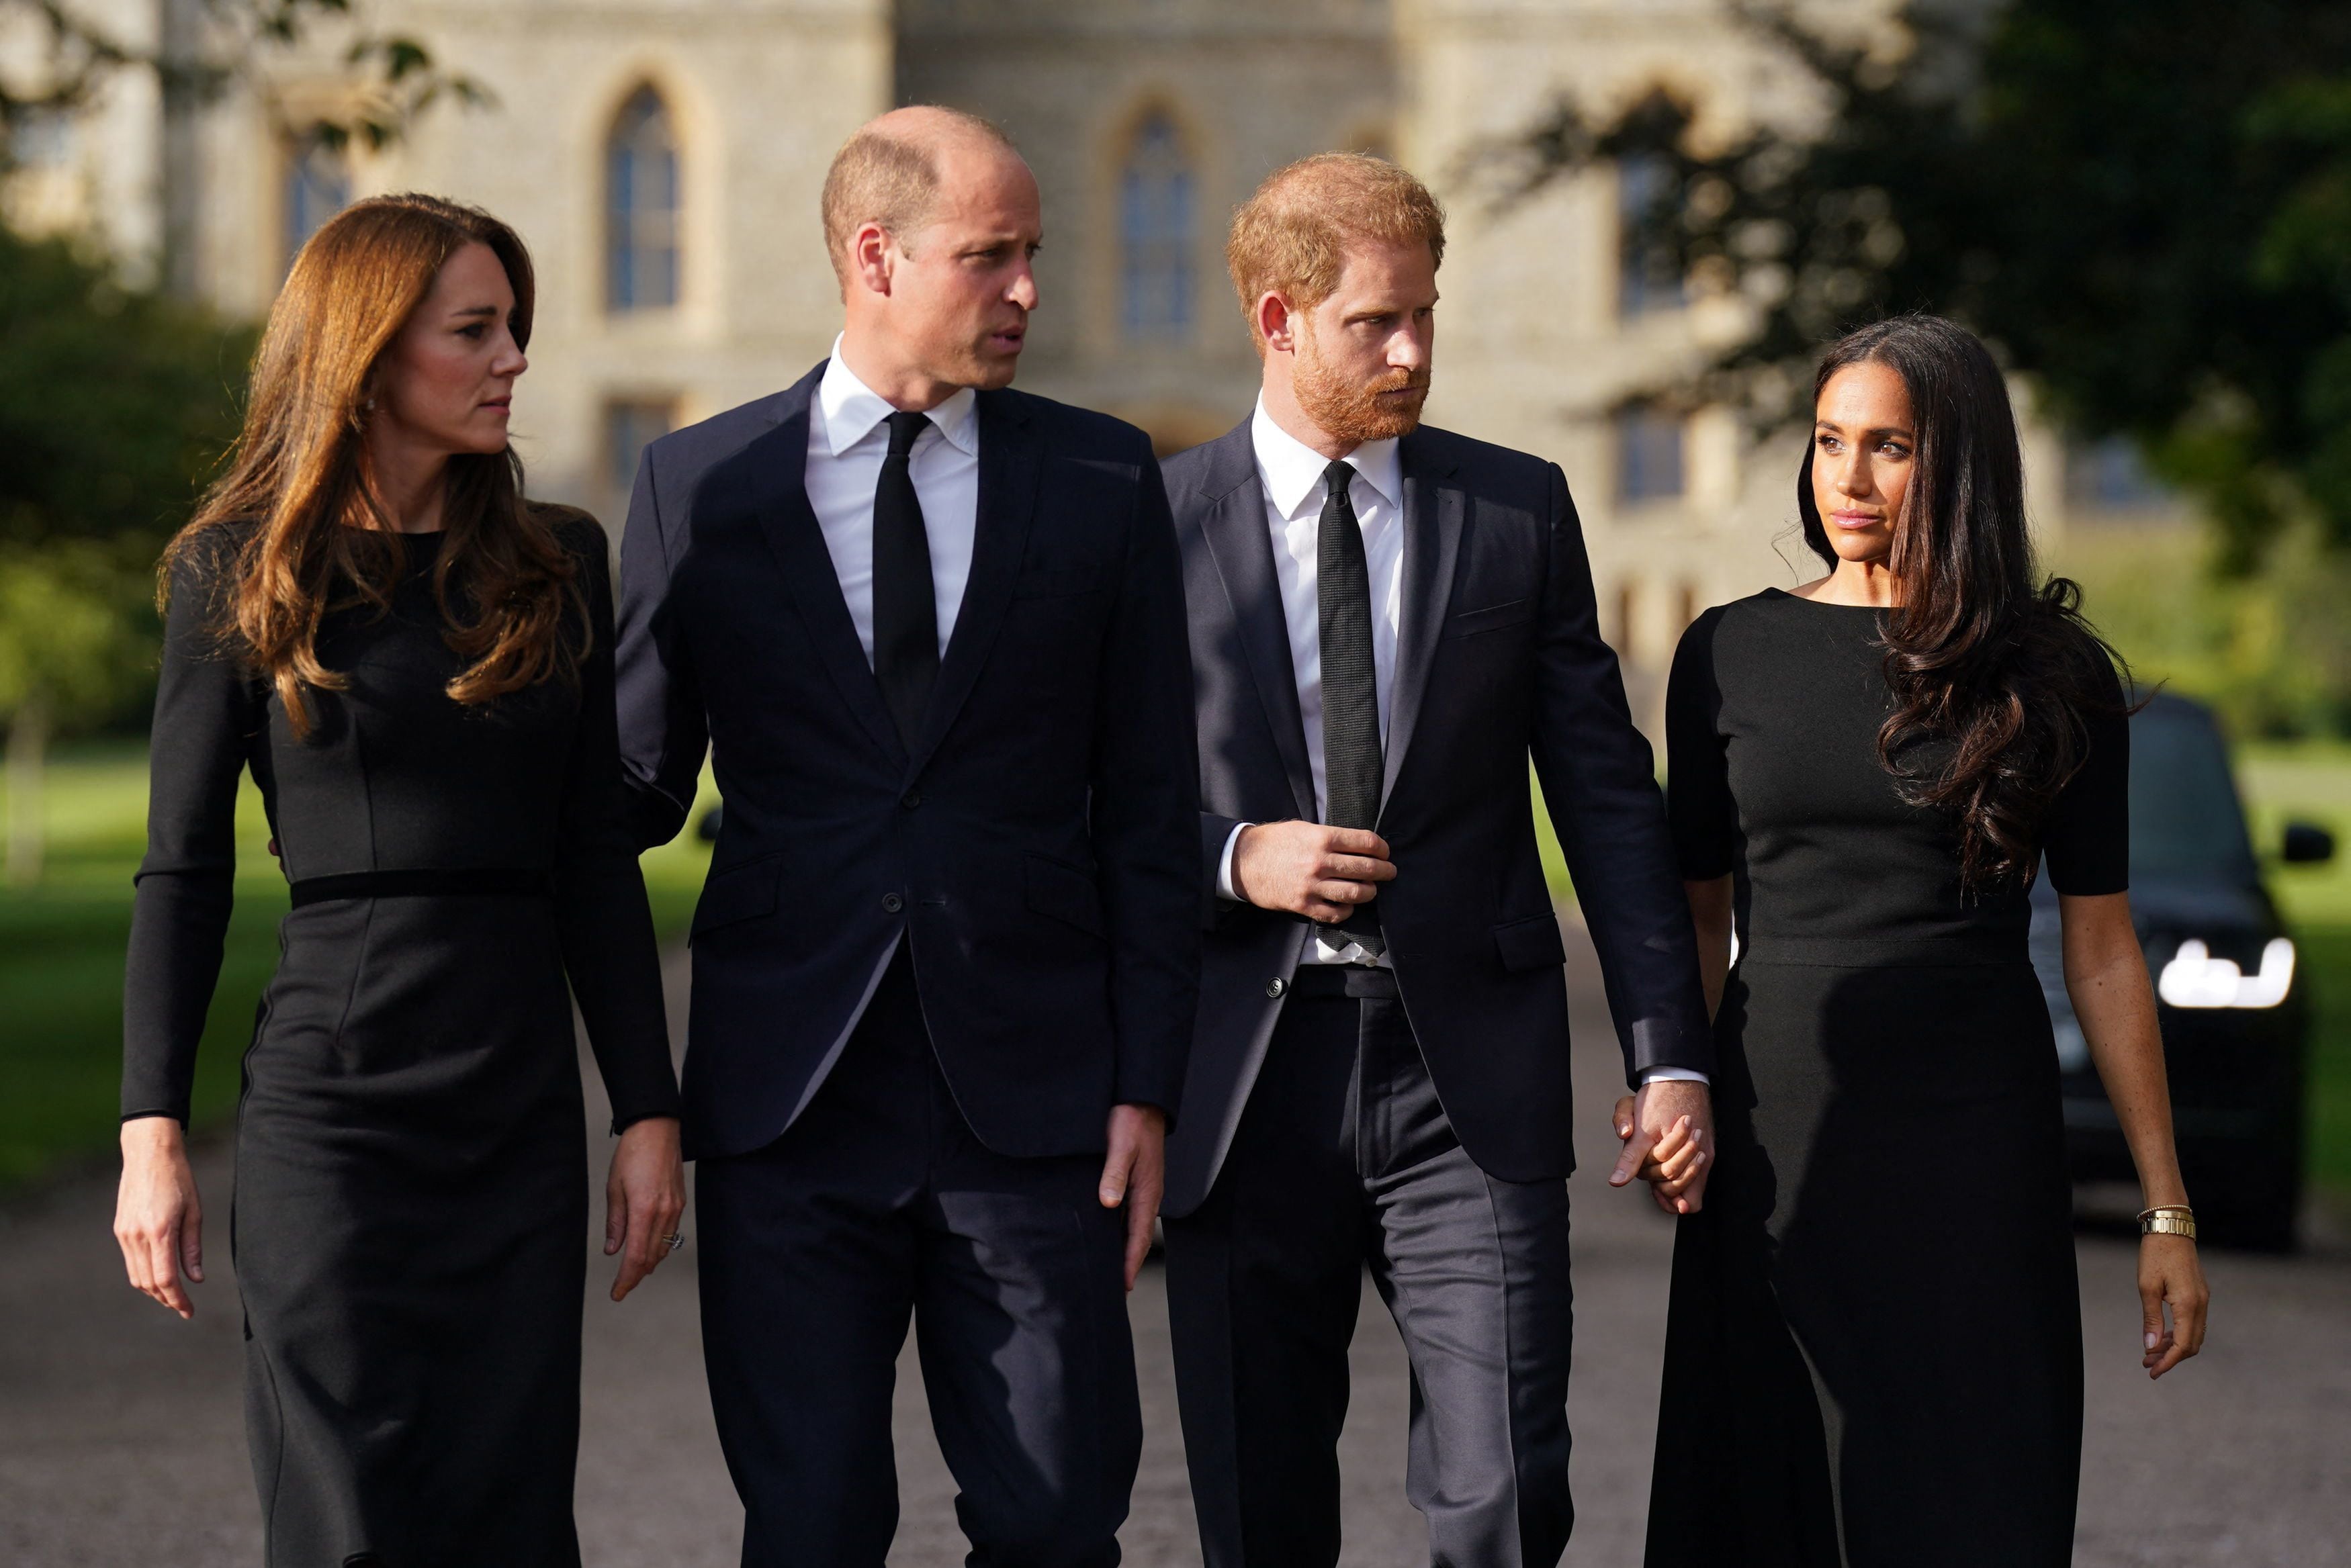 La última vez que se vio a los príncipes William y Harry junto a sus esposas Kate y Meghan en una actividad pública fue durante el funeral de la reina Isabel II.